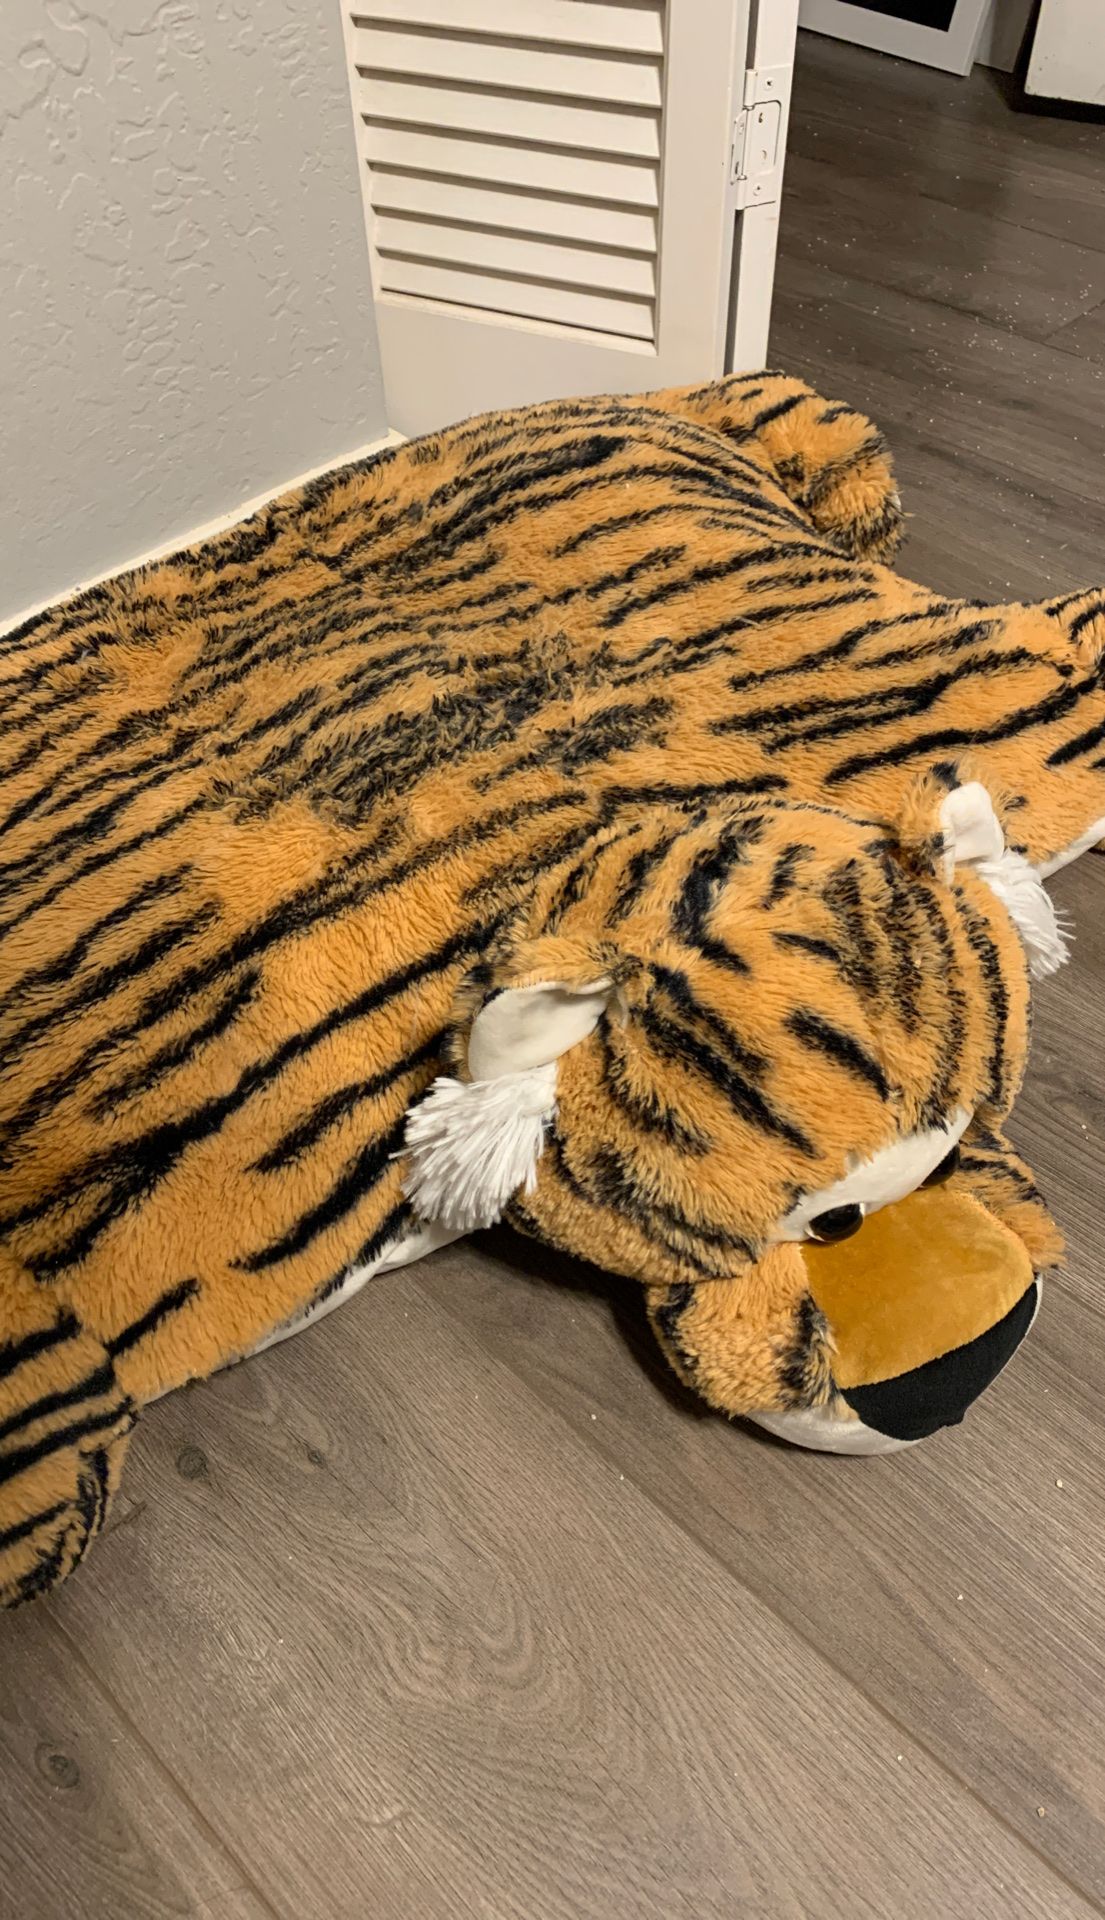 Tiger Stuffed Animal/Pillow Pet